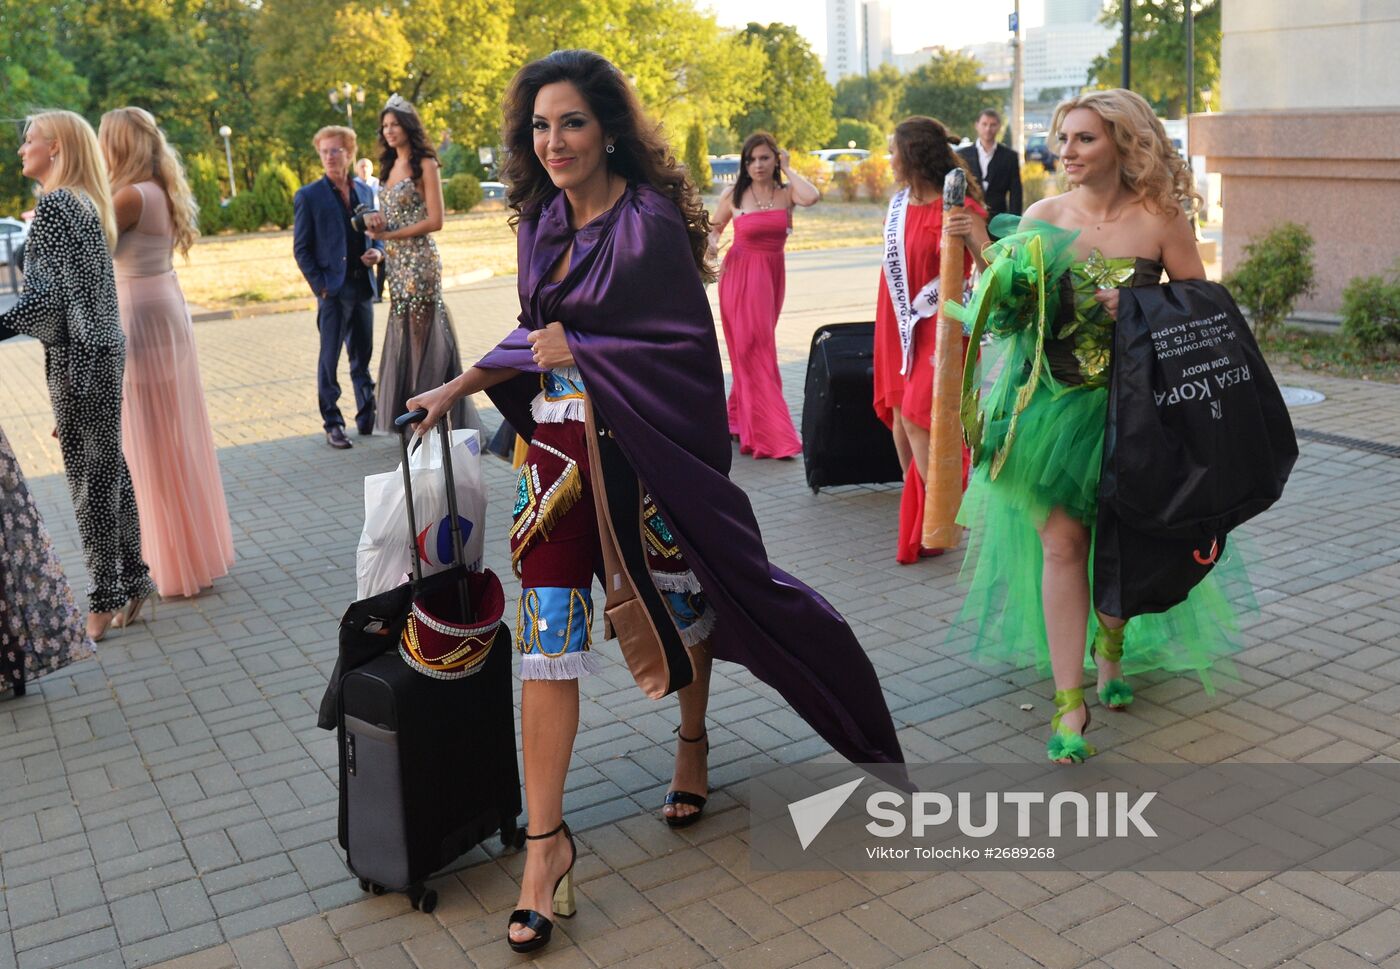 Beauty pageant Miss Universe-2015 in Minsk